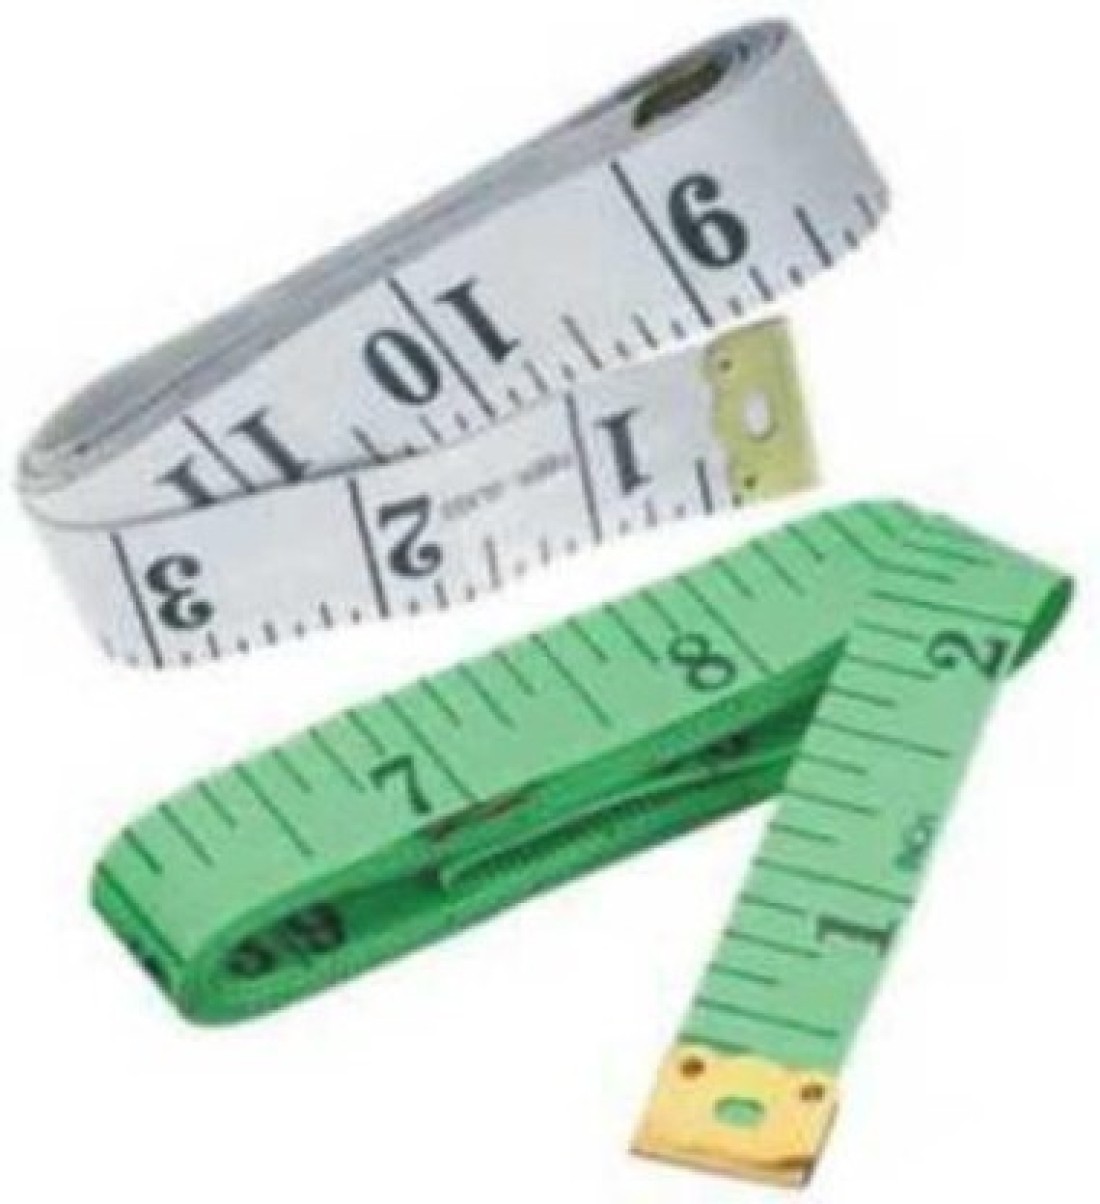 PRISAMX INCH TAP - 164 Measurement Tape Price in India - Buy